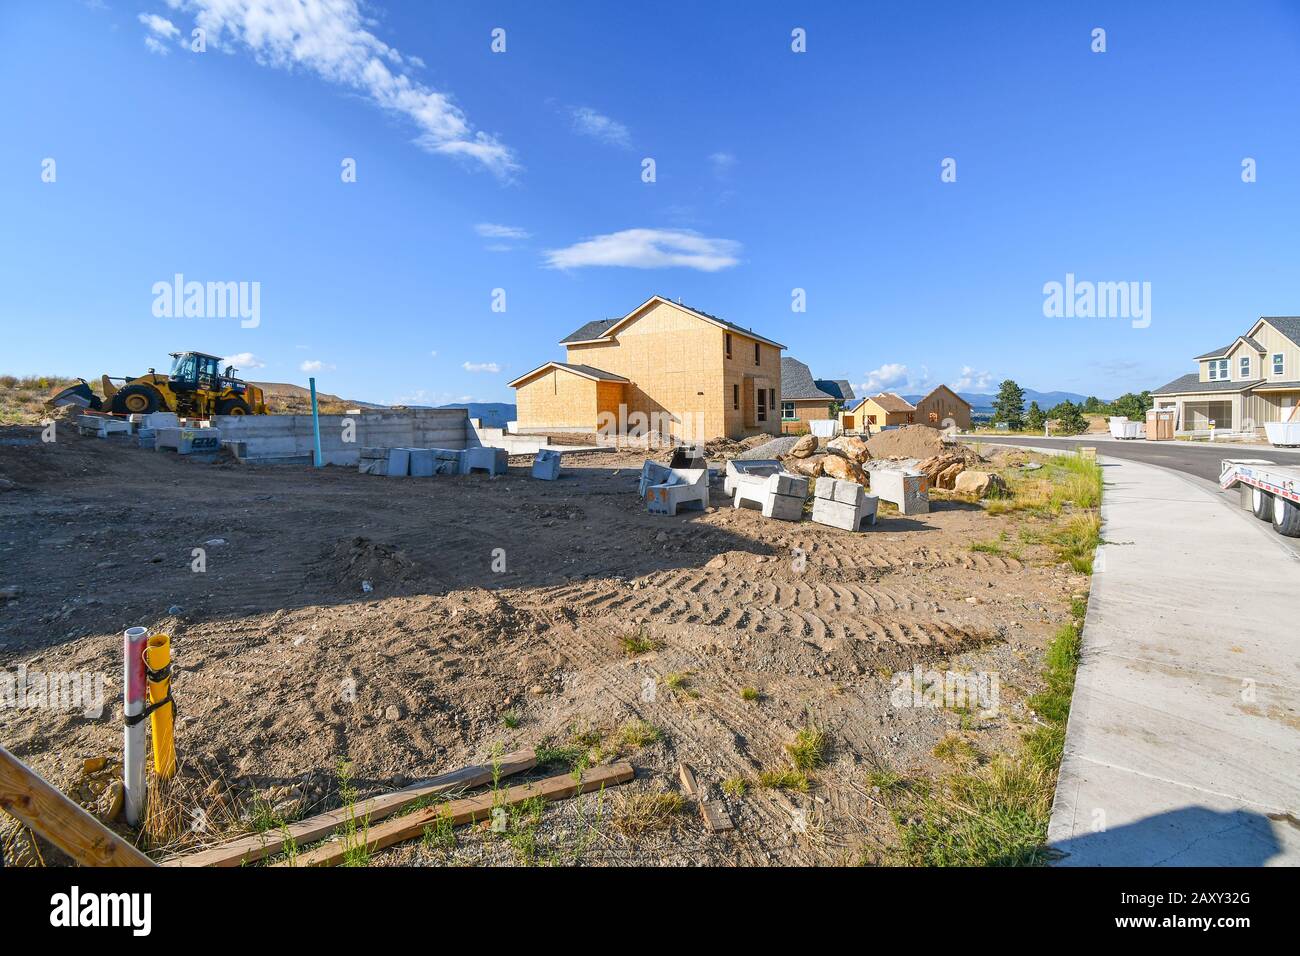 Lote de viviendas vacias fotografías e imágenes de alta resolución - Alamy